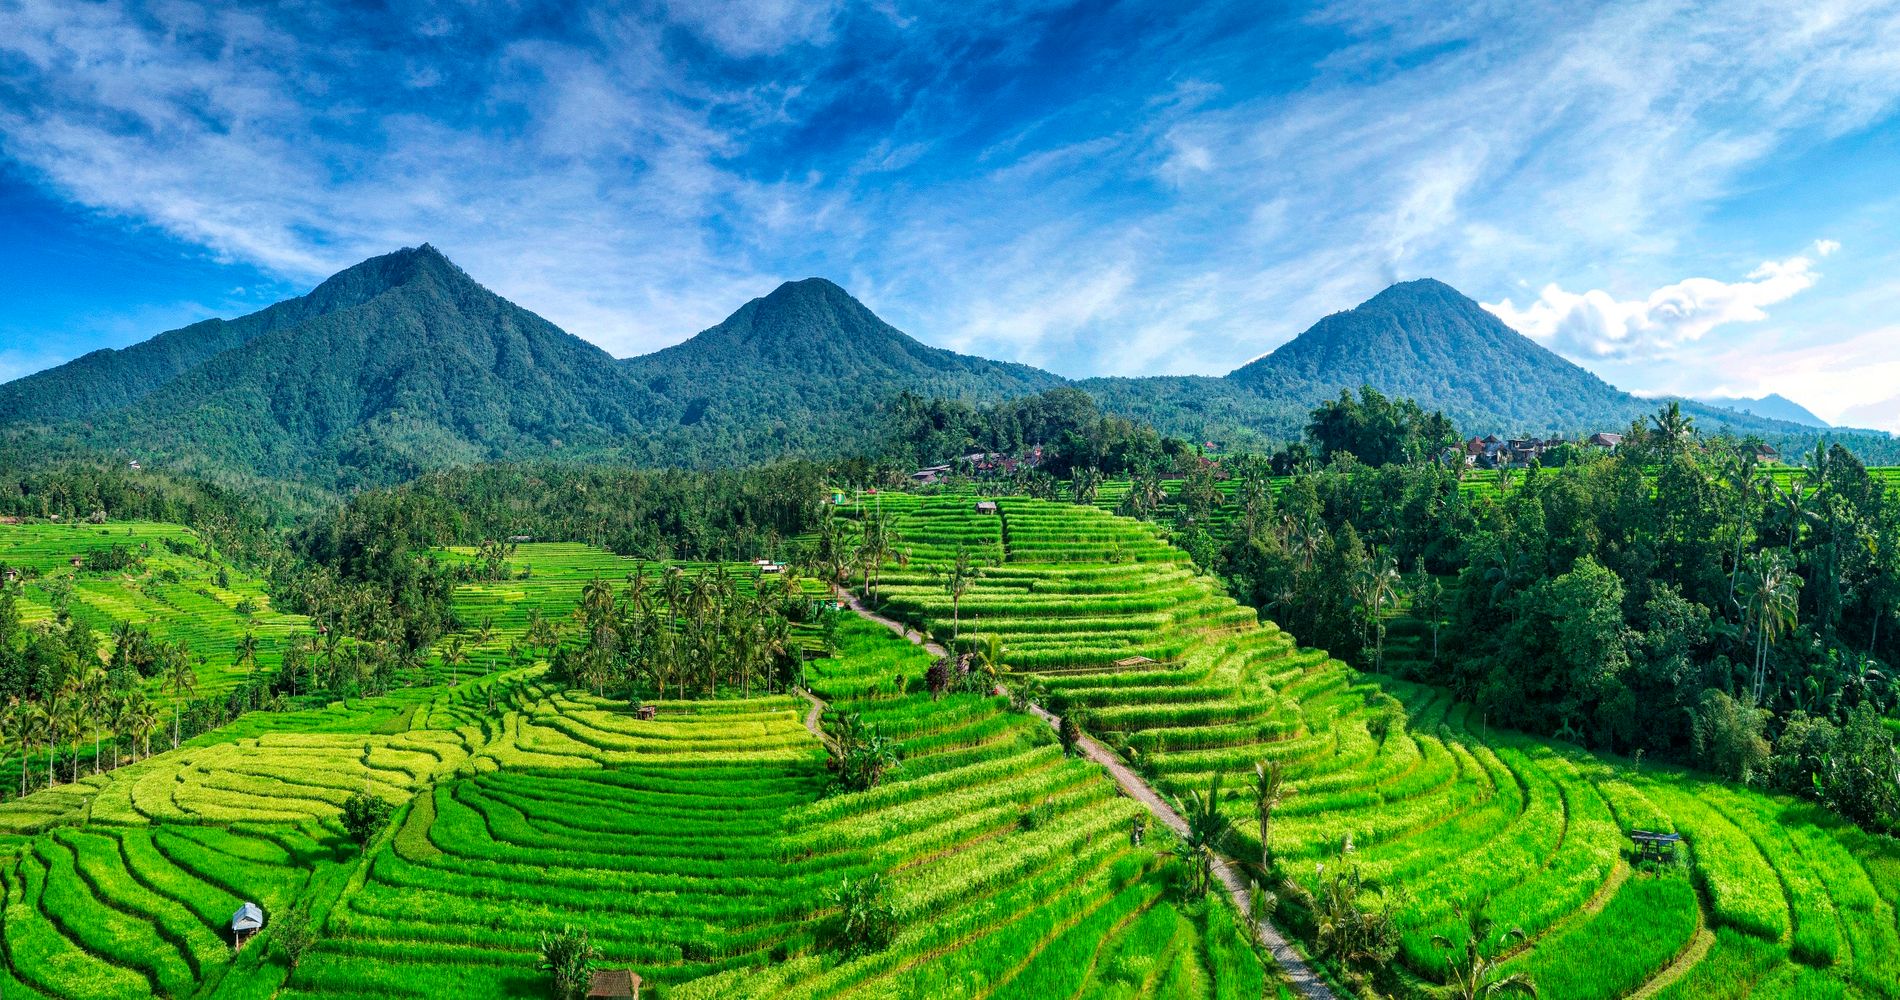 Background Image_Bali